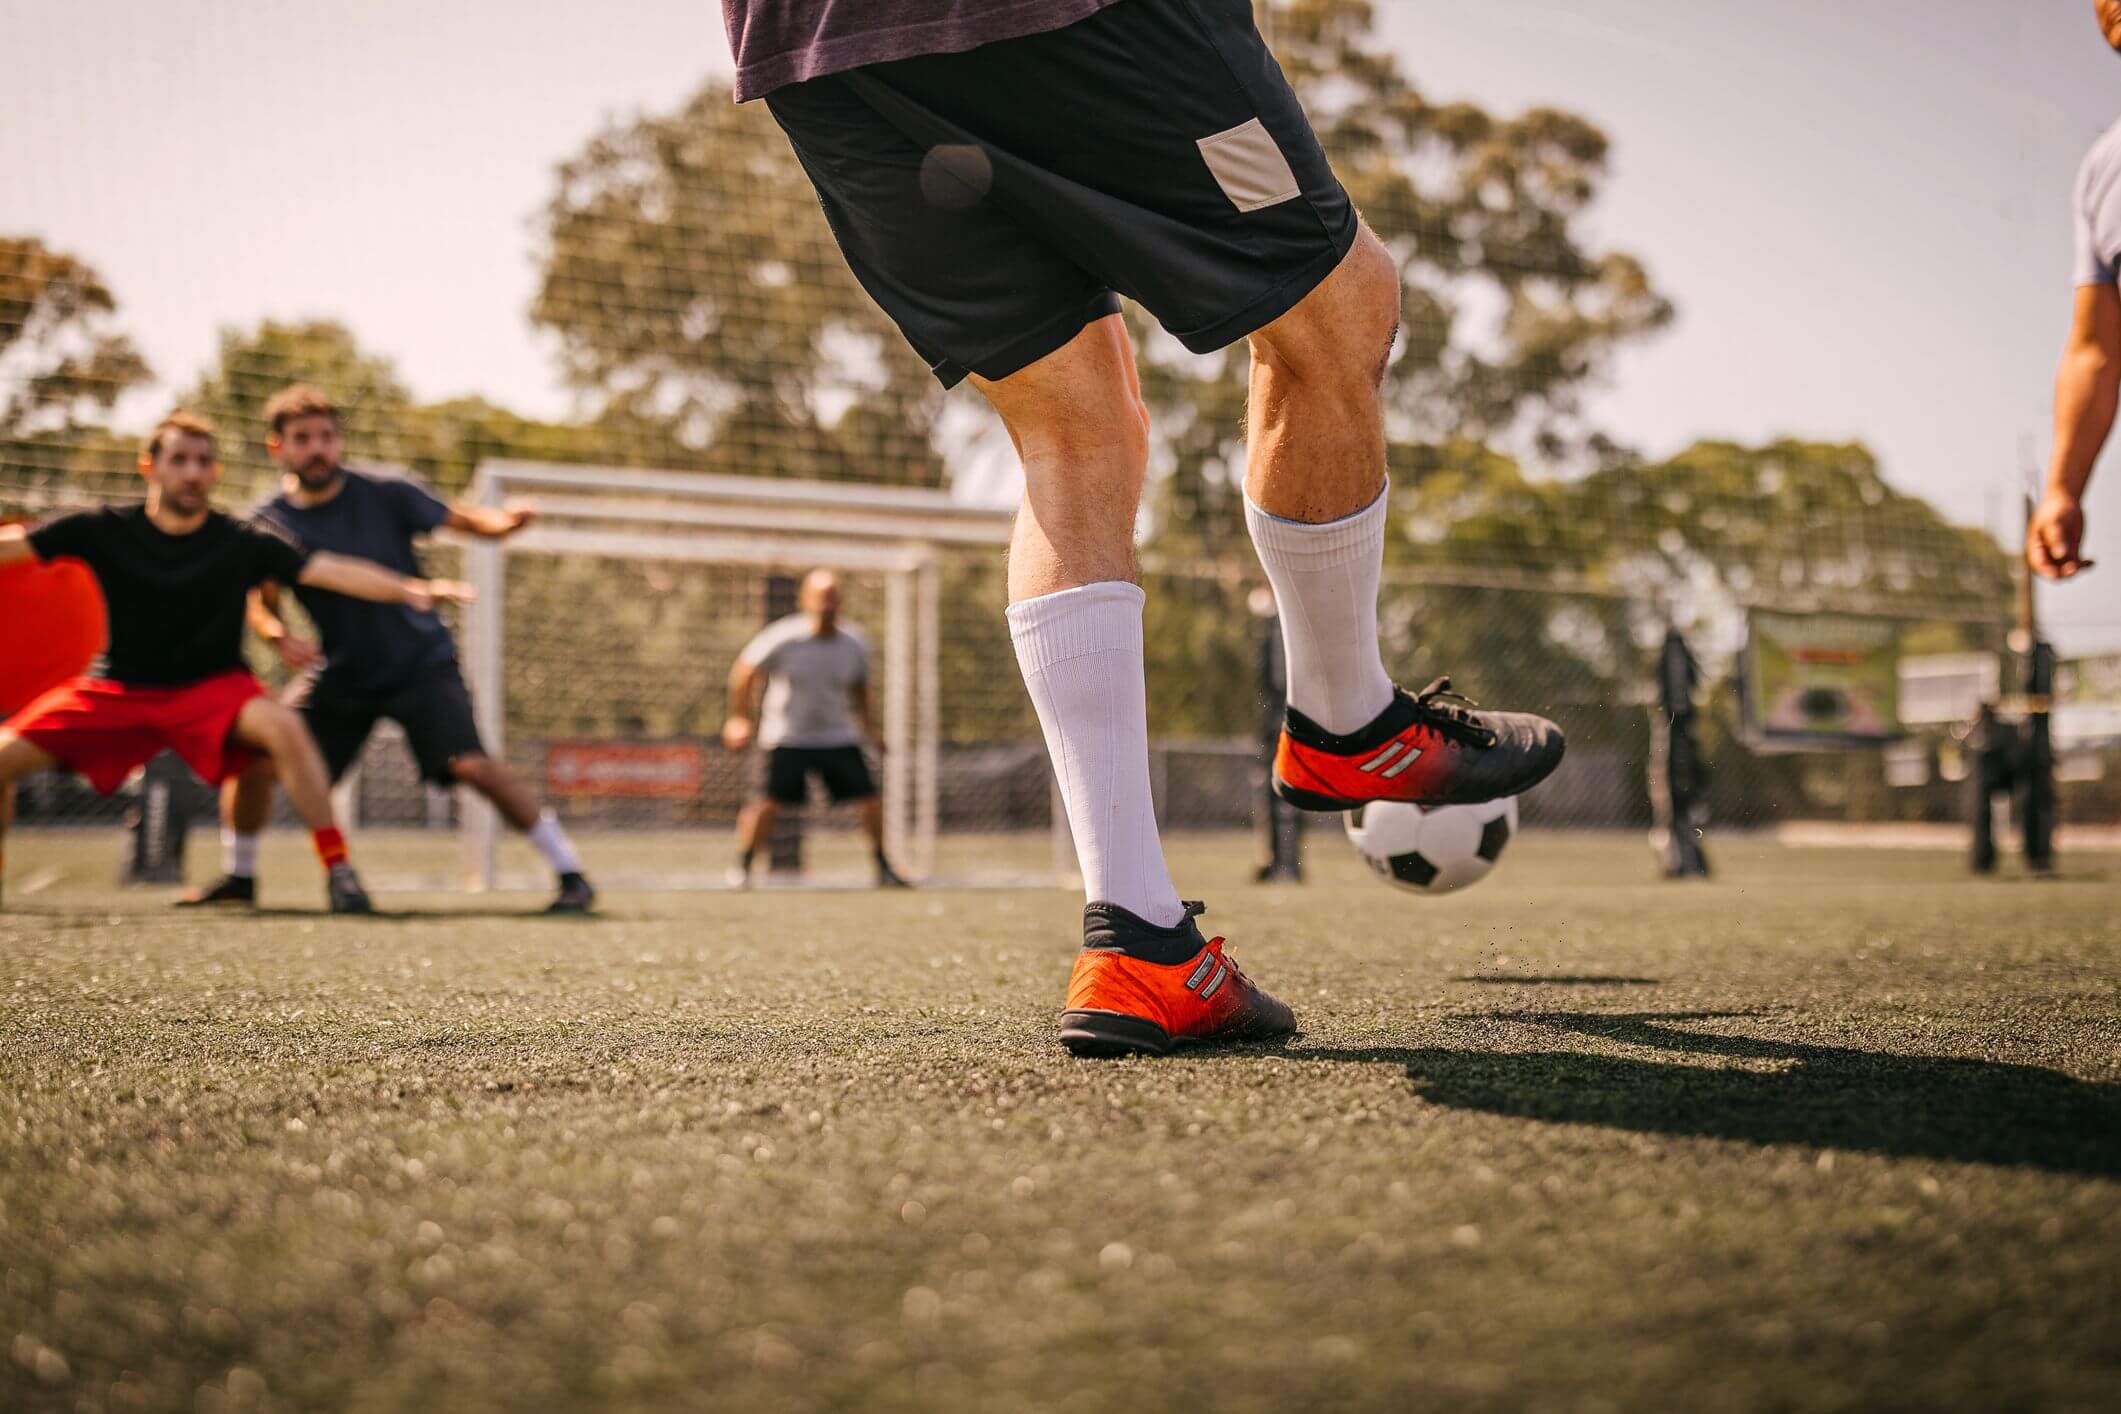 Jogar futebol ajuda a reduzir pressão sanguínea